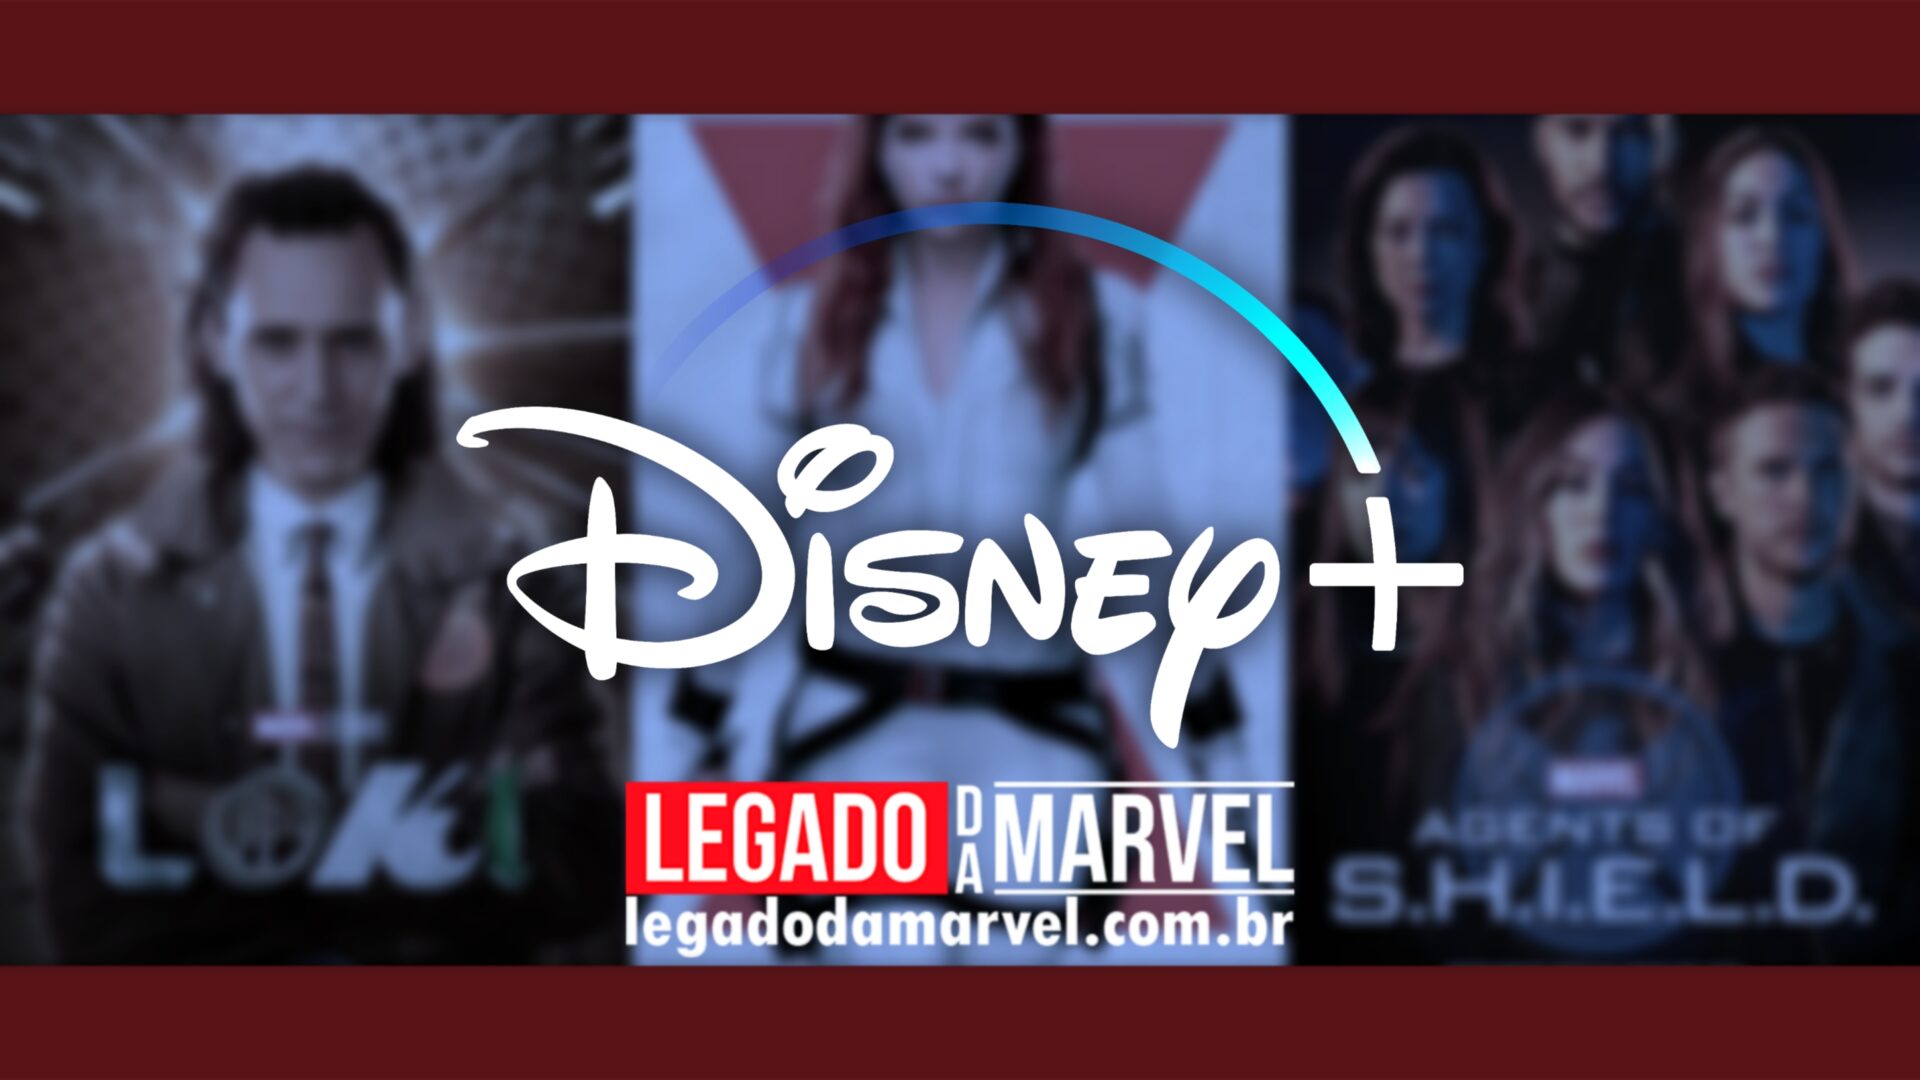  Confira os títulos da Marvel mais assistidos do Disney+ atualmente